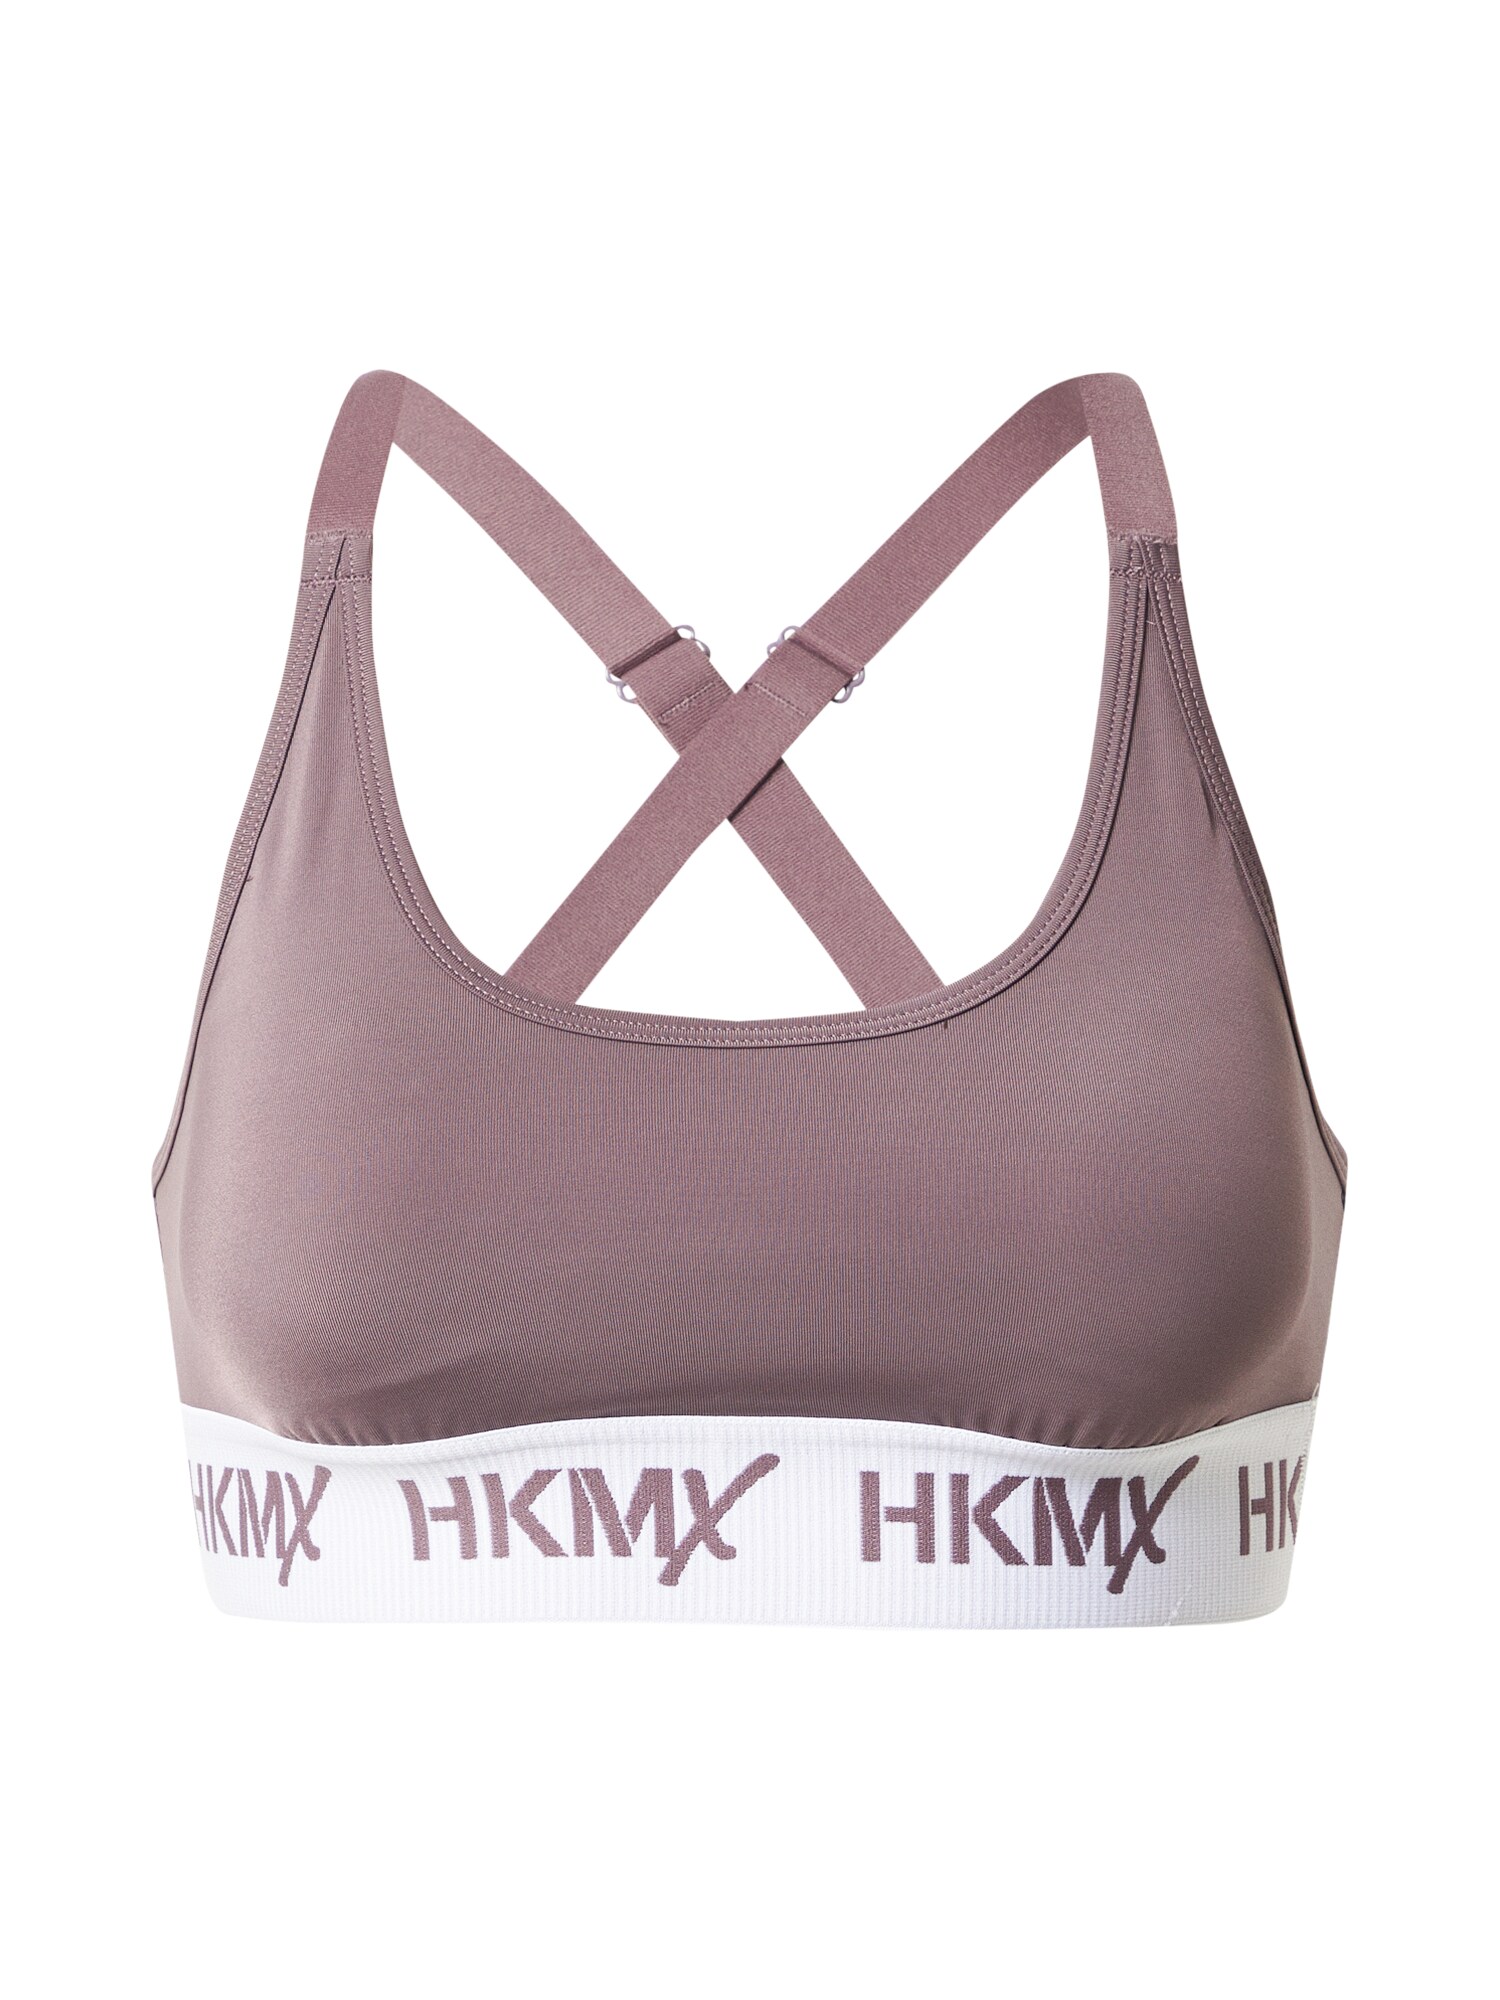 HKMX Sportinė liemenėlė rausvai pilka / balta / rausvai violetinė spalva